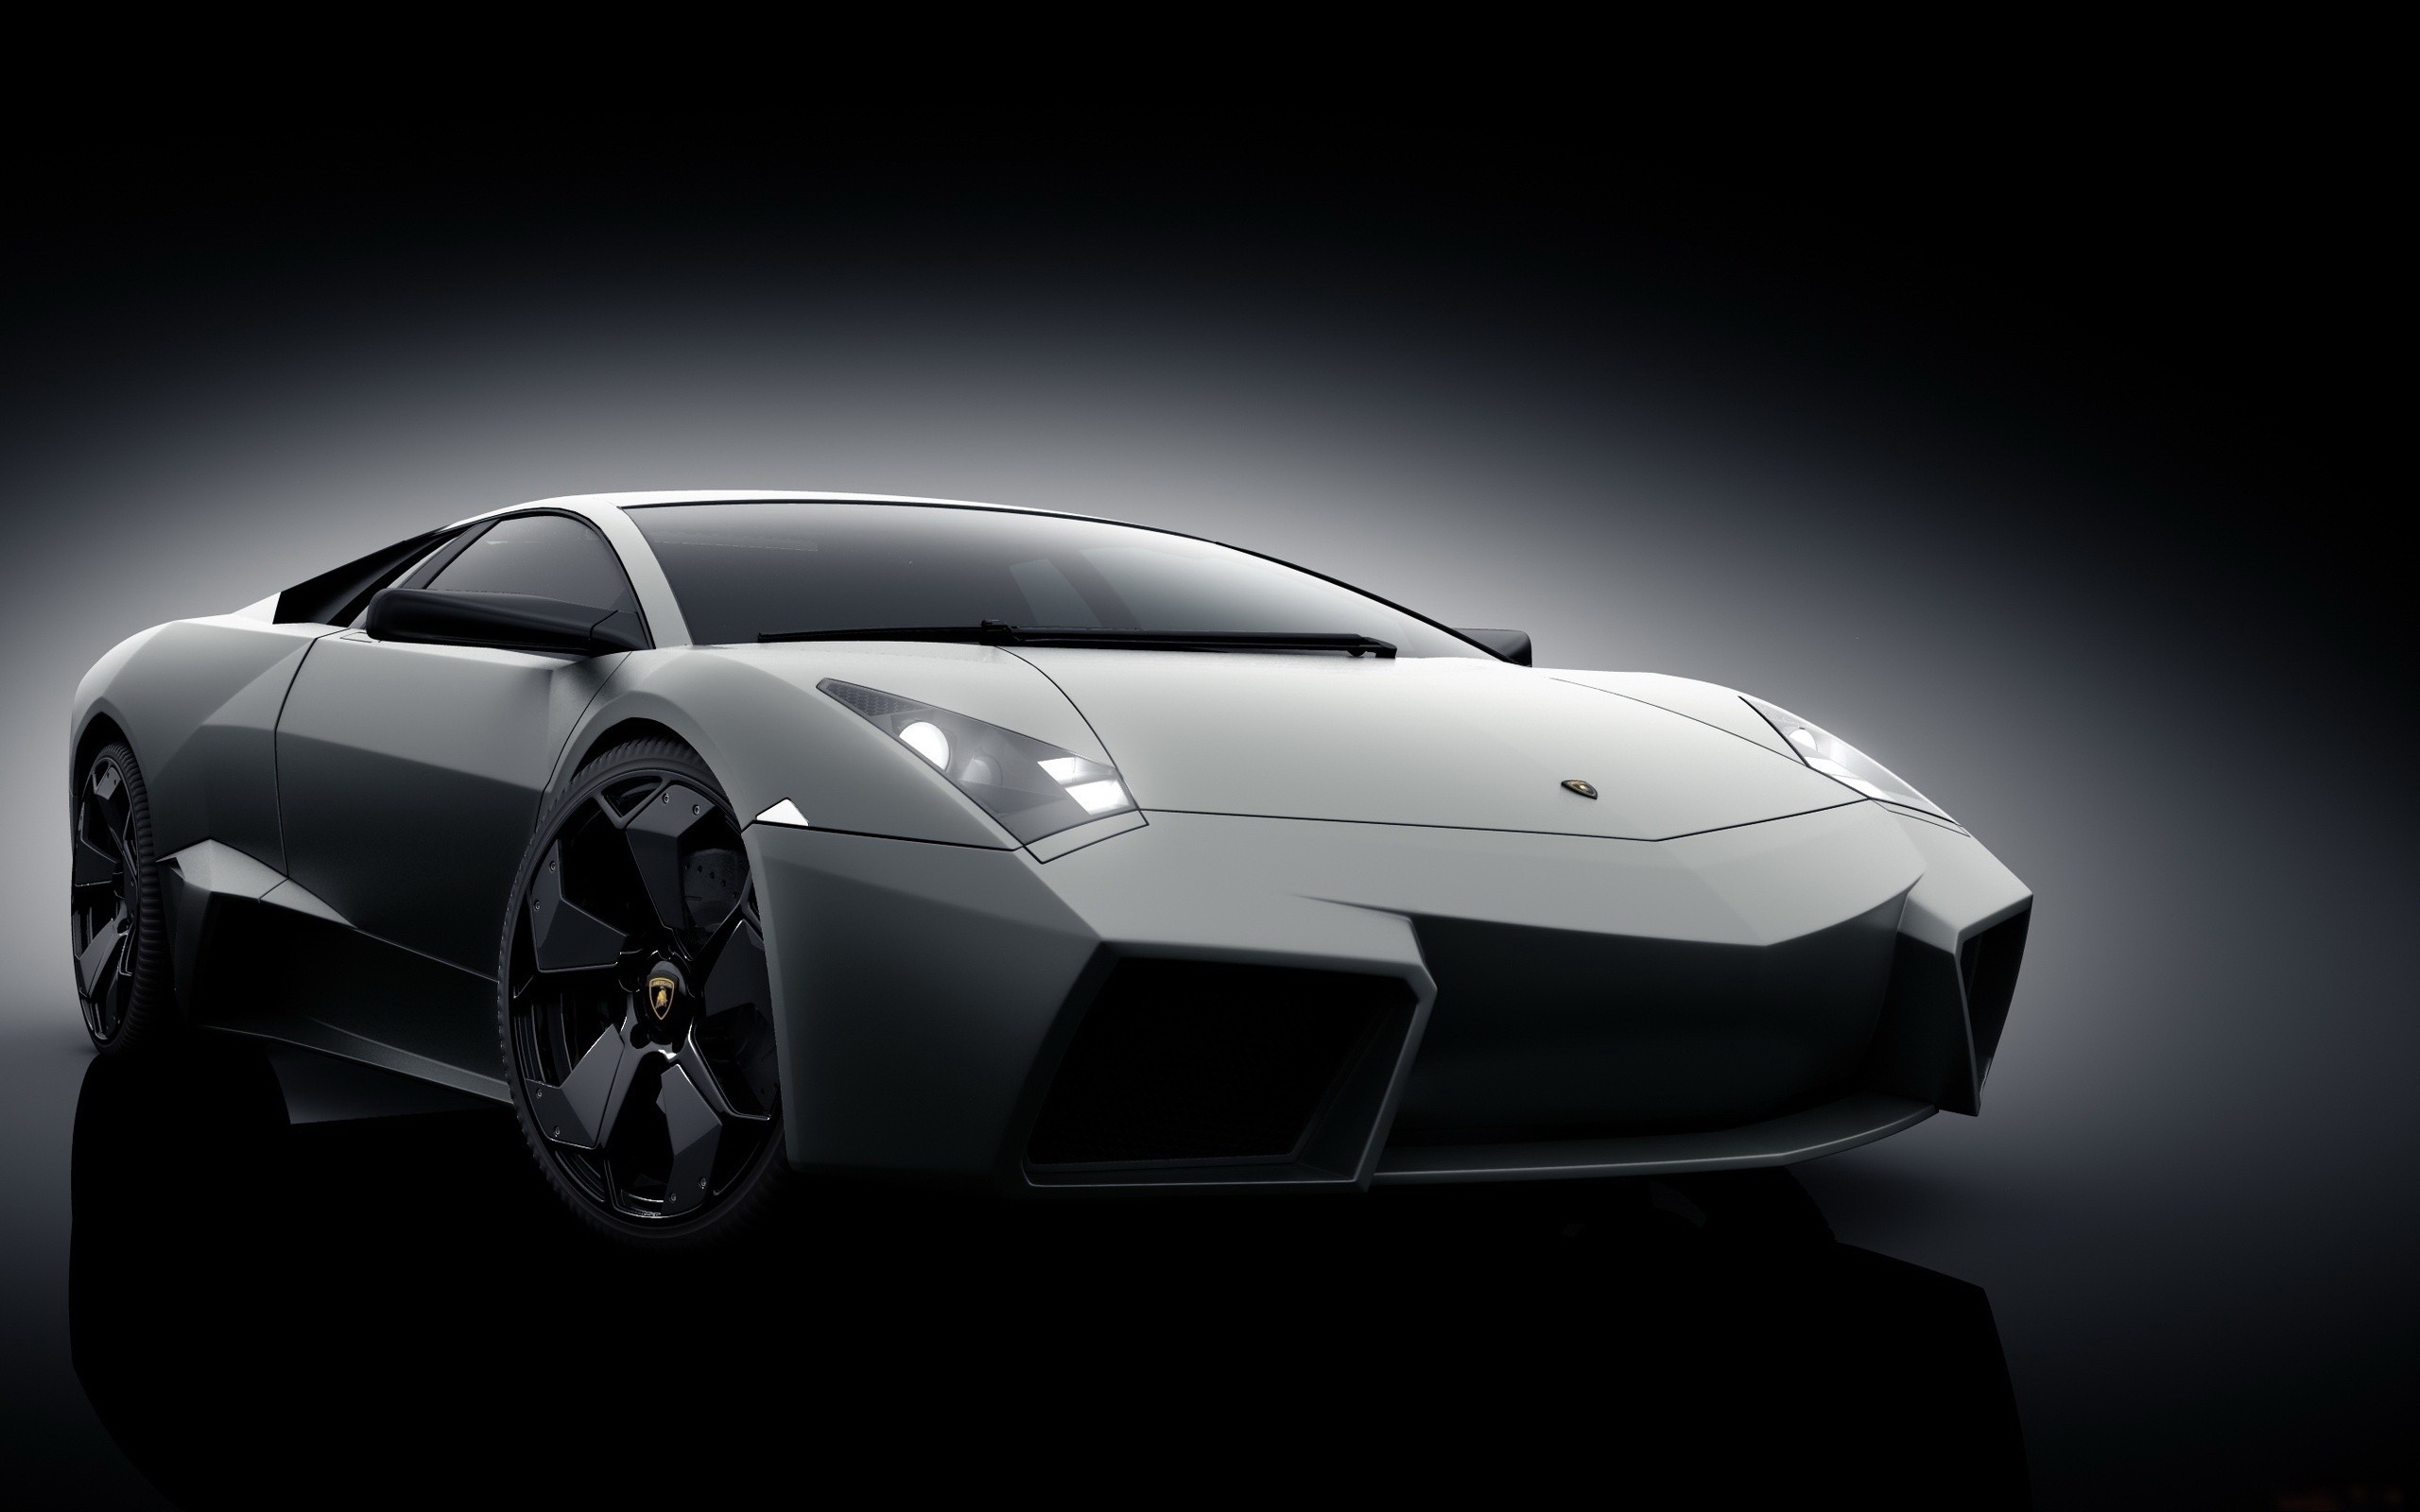 Grey Lamborghini Reventon for 2560 x 1600 widescreen resolution